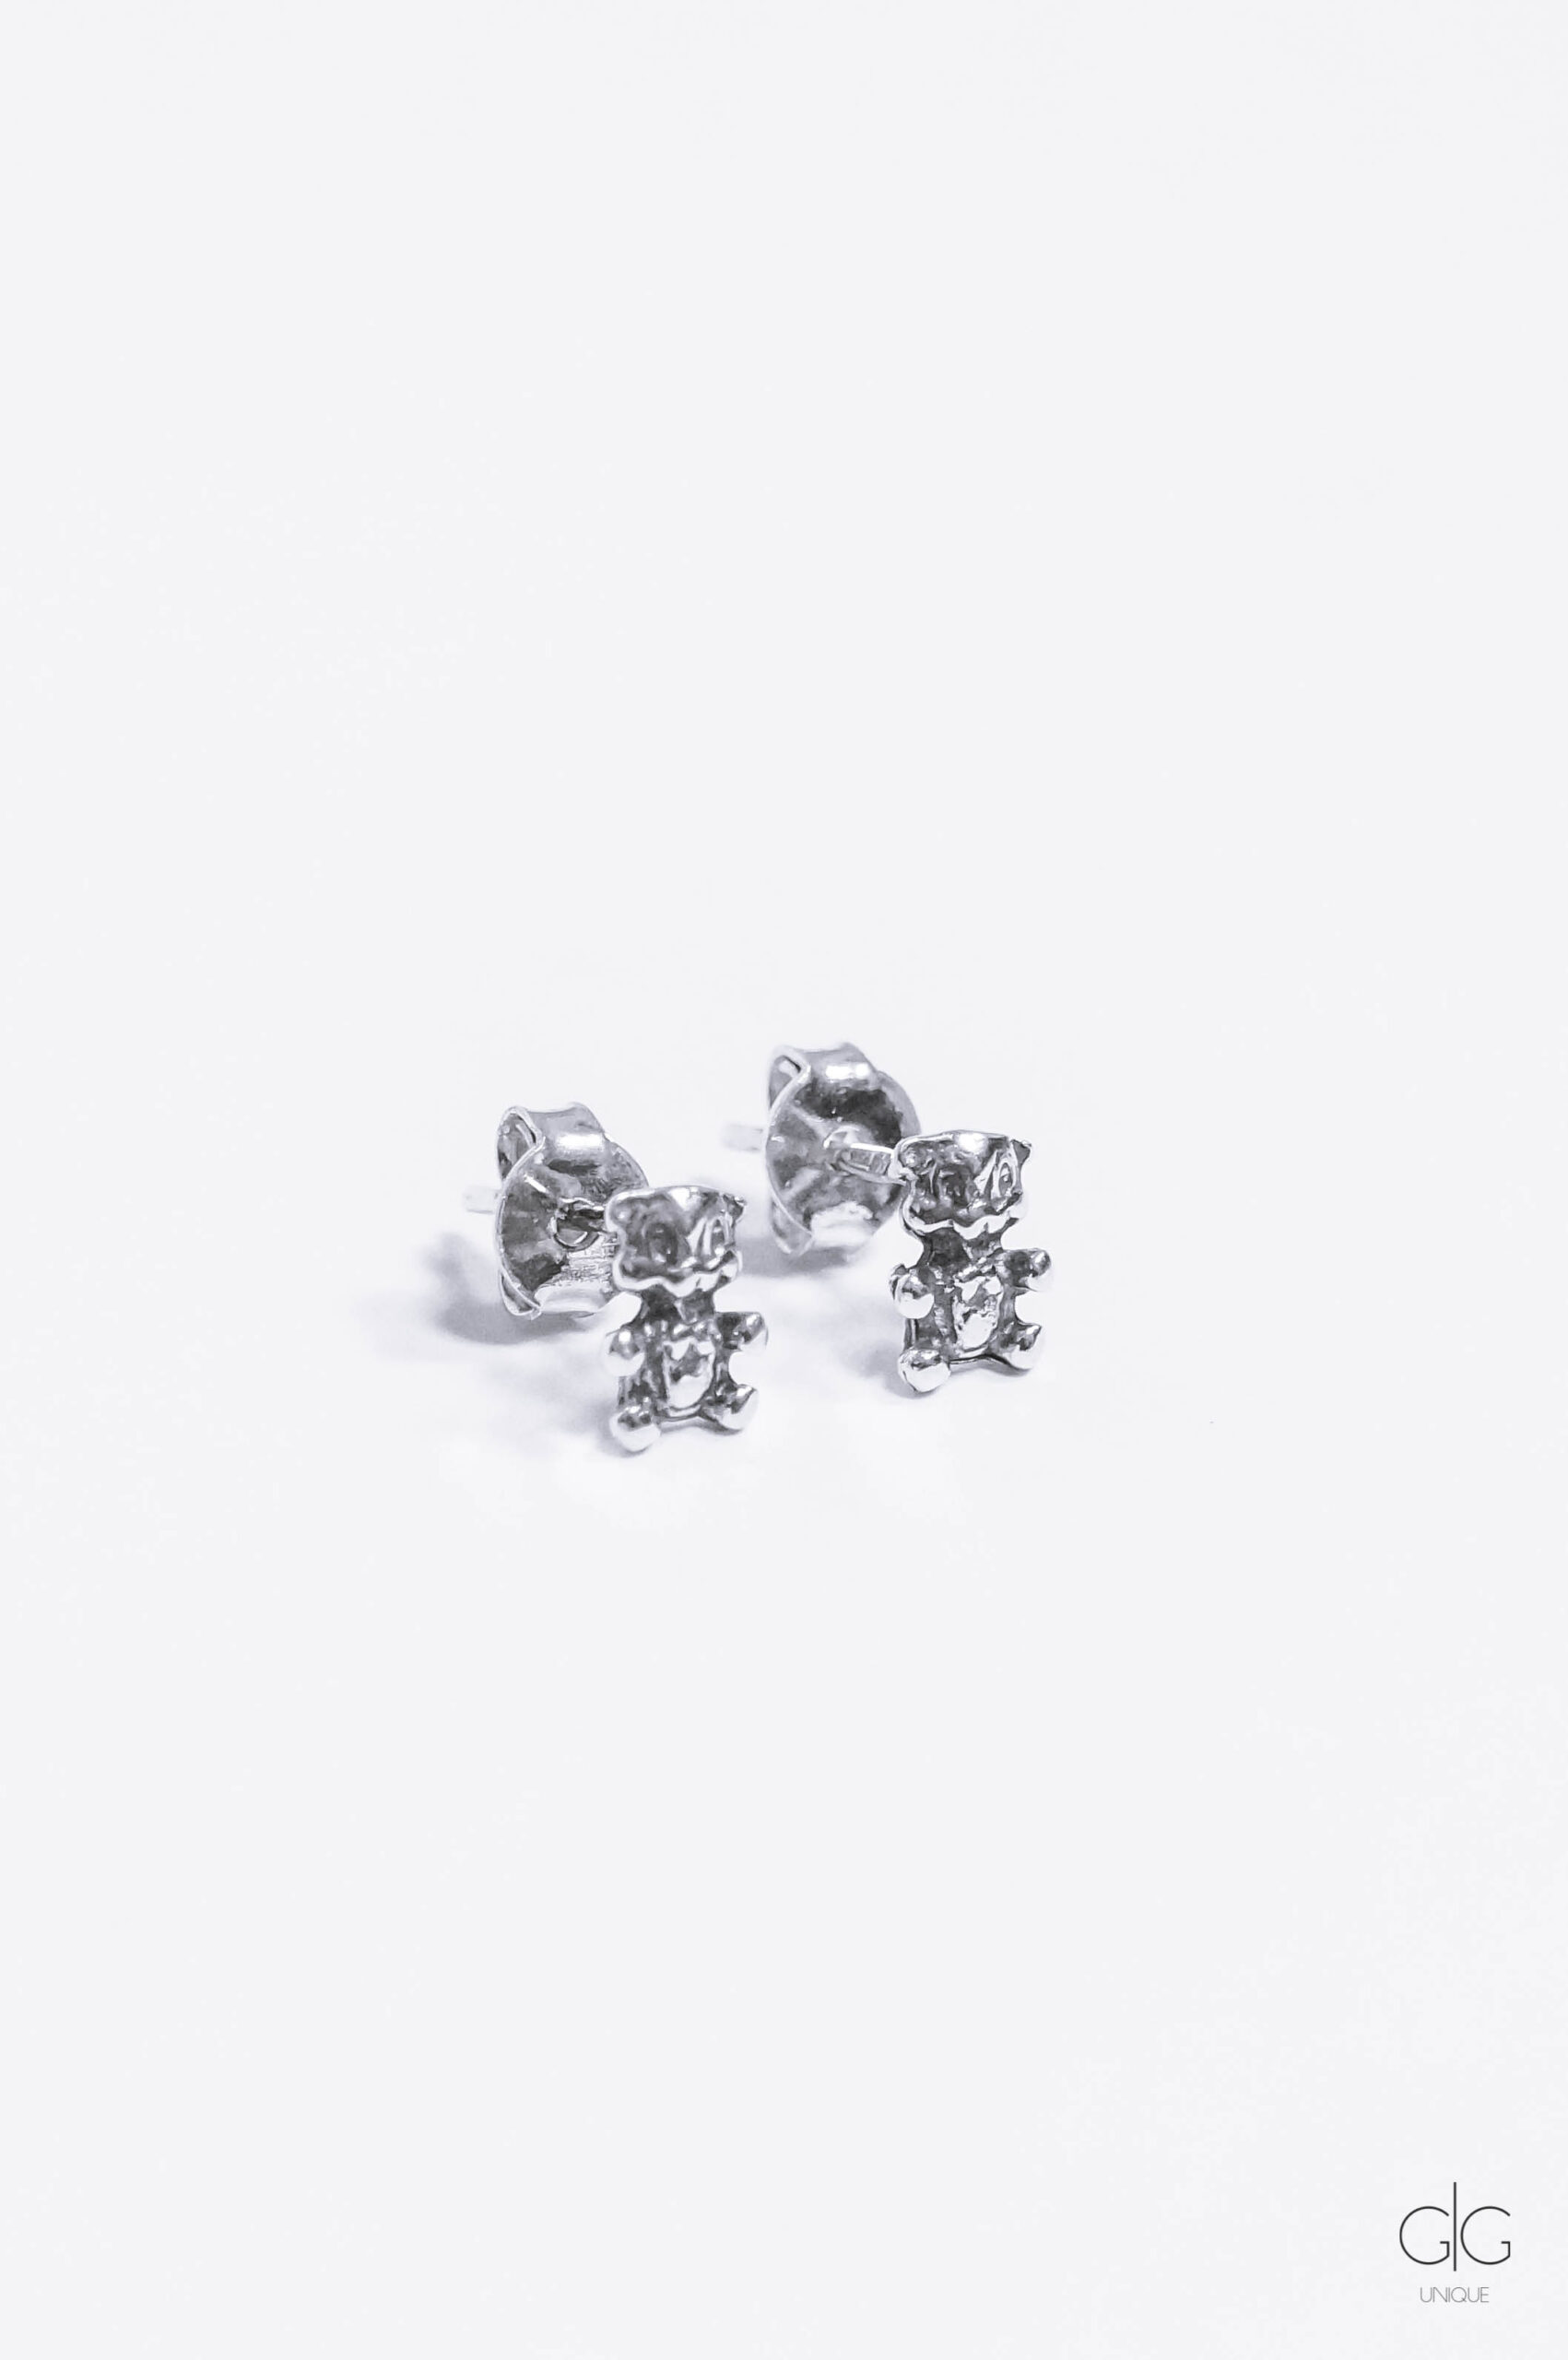 Silver teddy bear earrings - GG UNIQUE